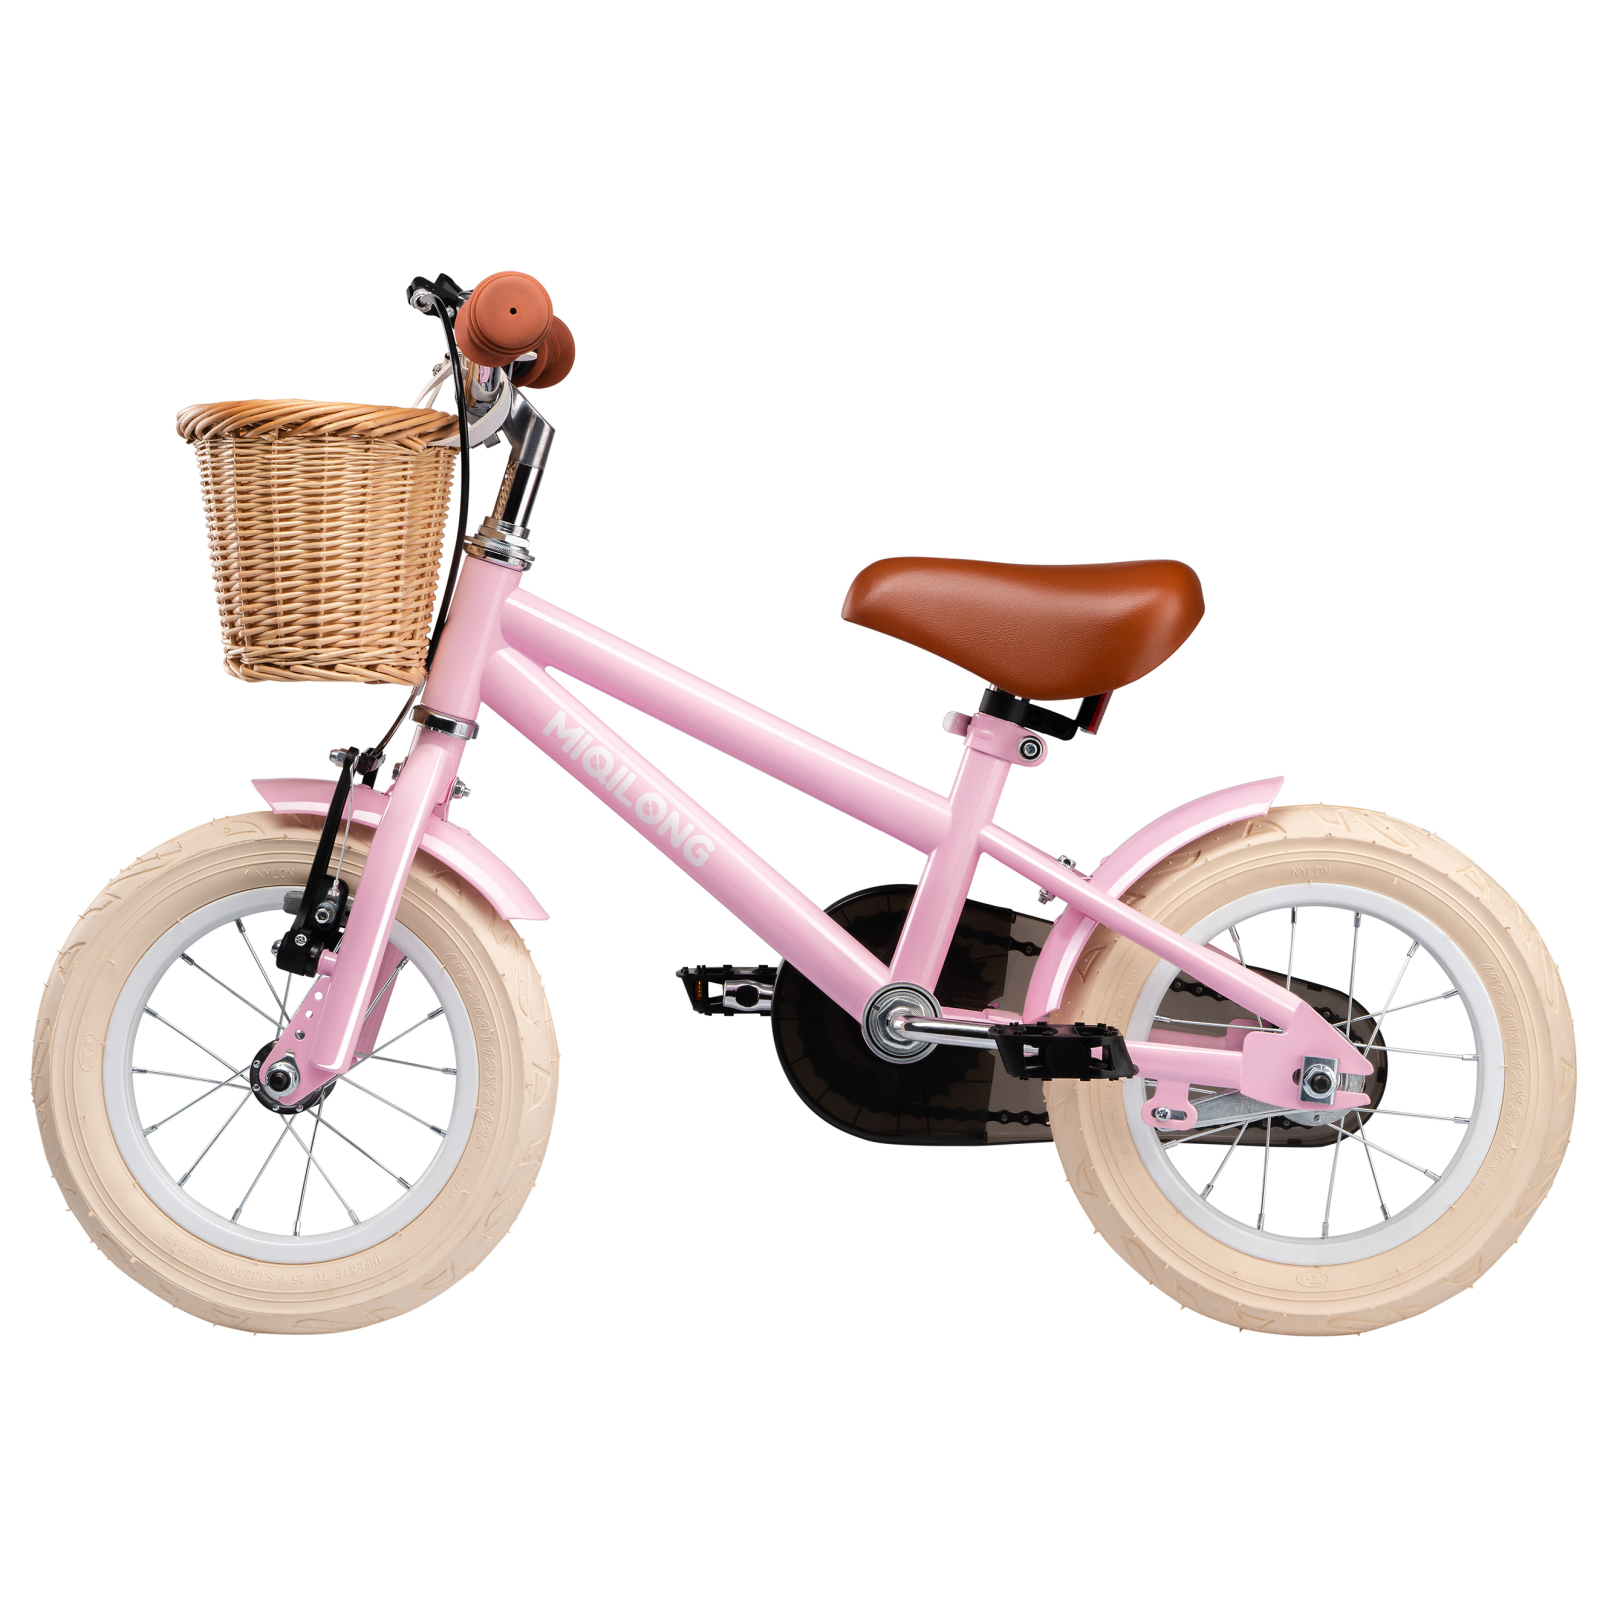 Дитячий велосипед Miqilong RM Бежевий 12" (ATW-RM12-BEIGE) зображення 4